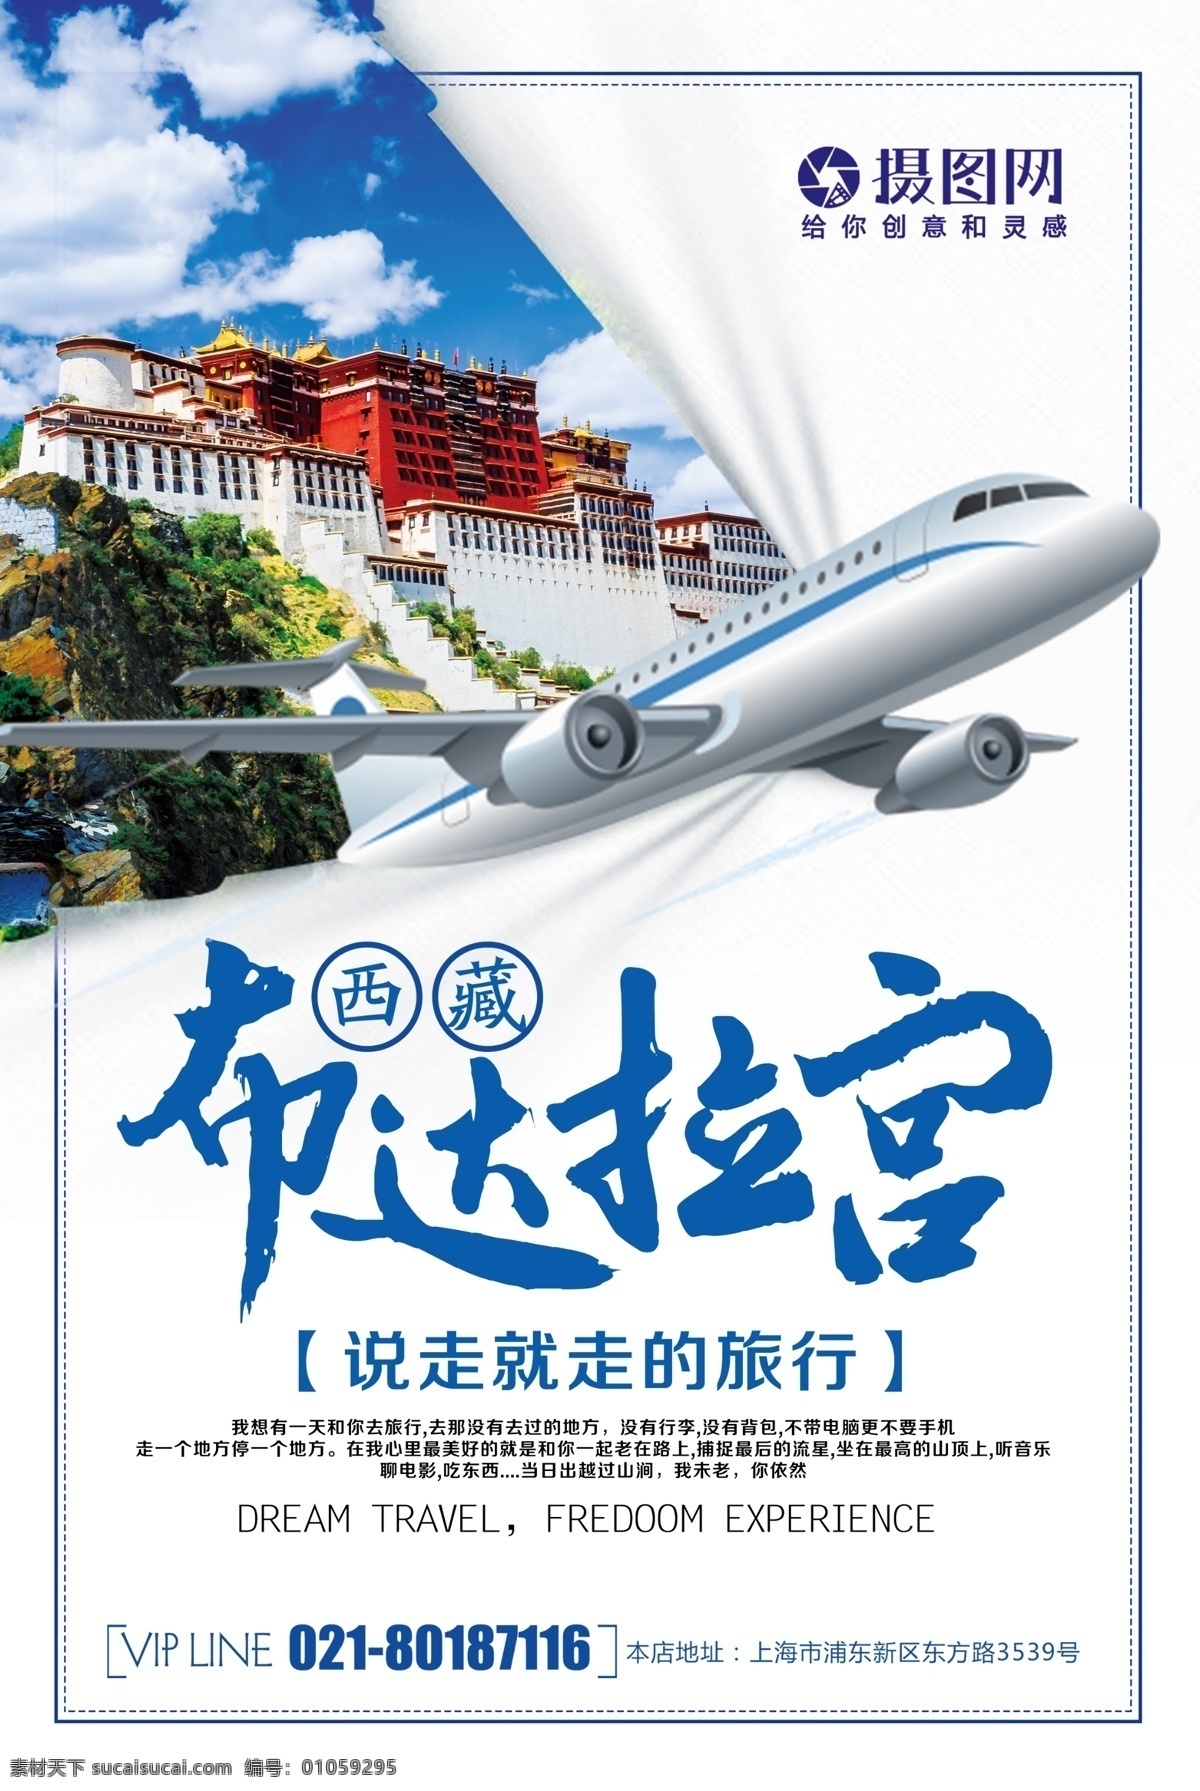 简约 西藏 布达拉宫 旅行 海报 去旅游 去旅行 新年旅游 新年旅行 旅行海报 猪年旅行 玩转世界 跨年 新年 海报图片